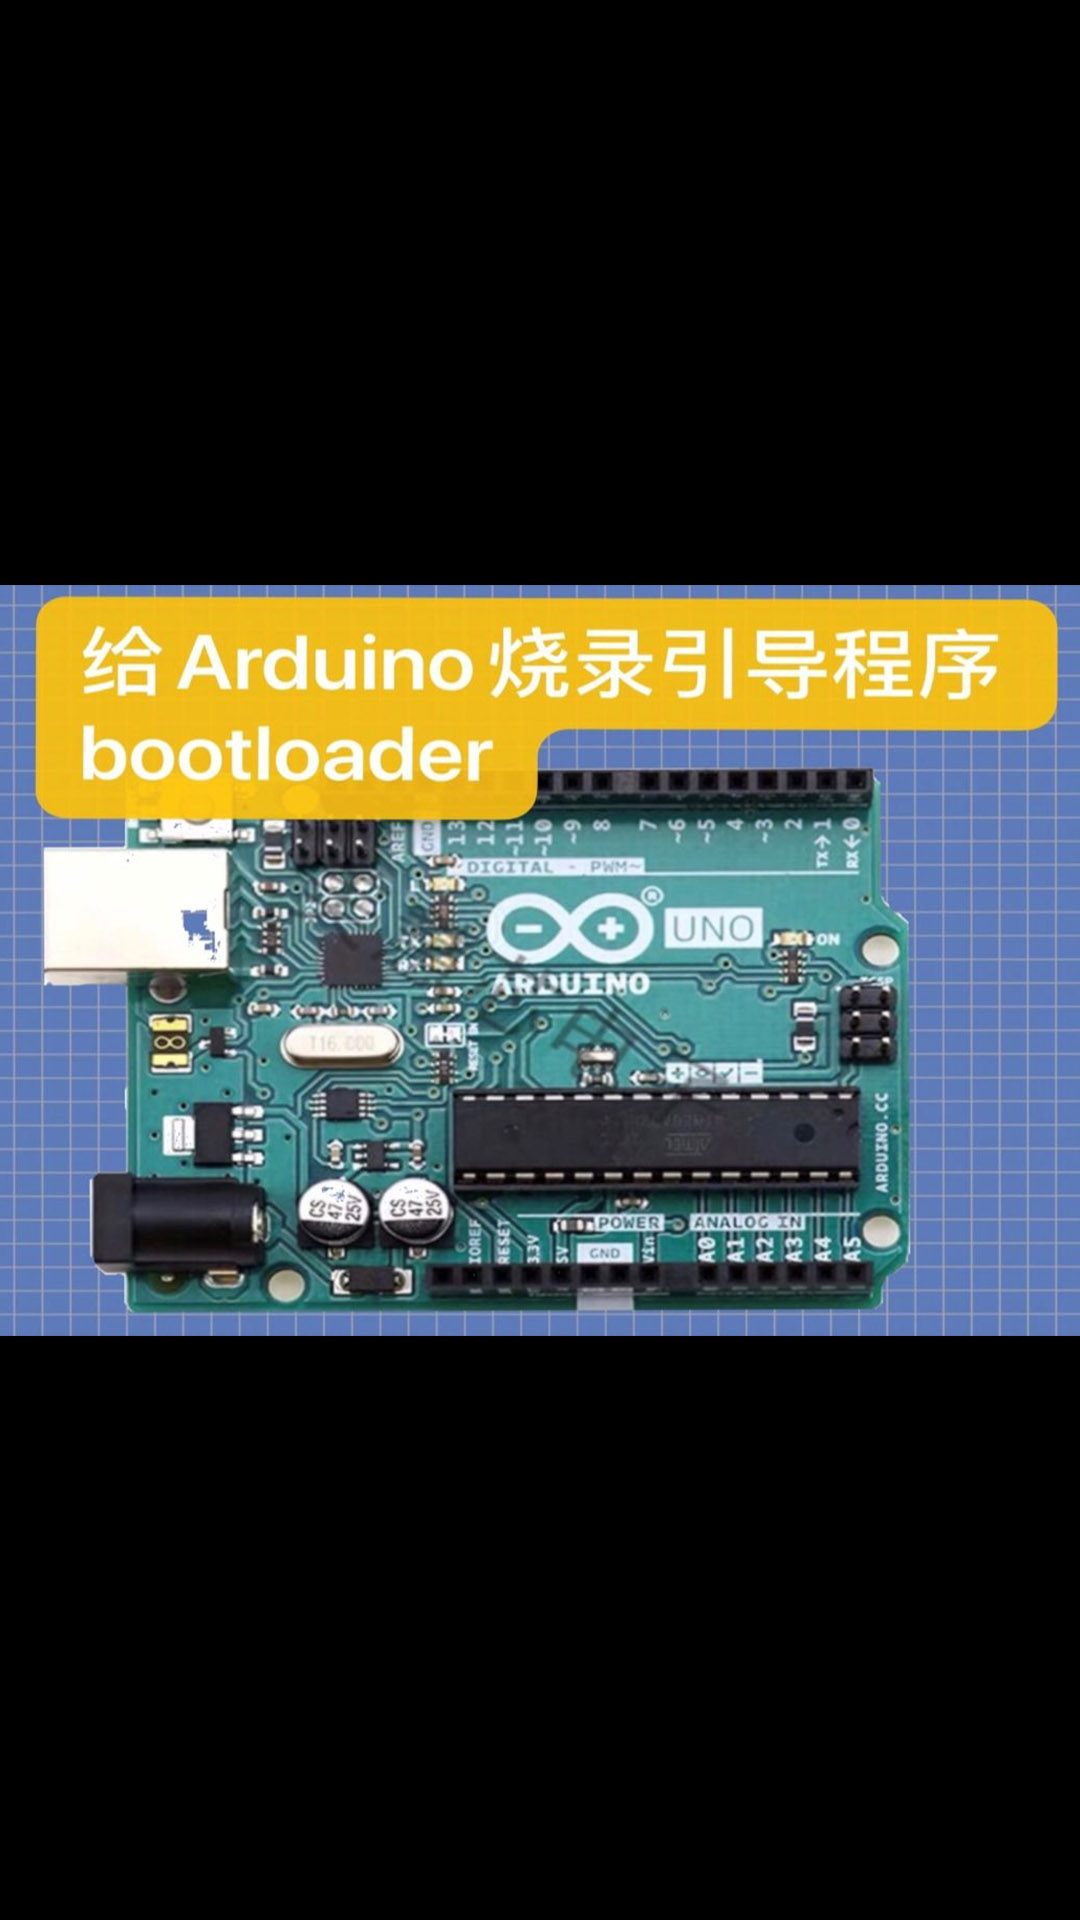 給Arduino燒錄引導程序bootloader 